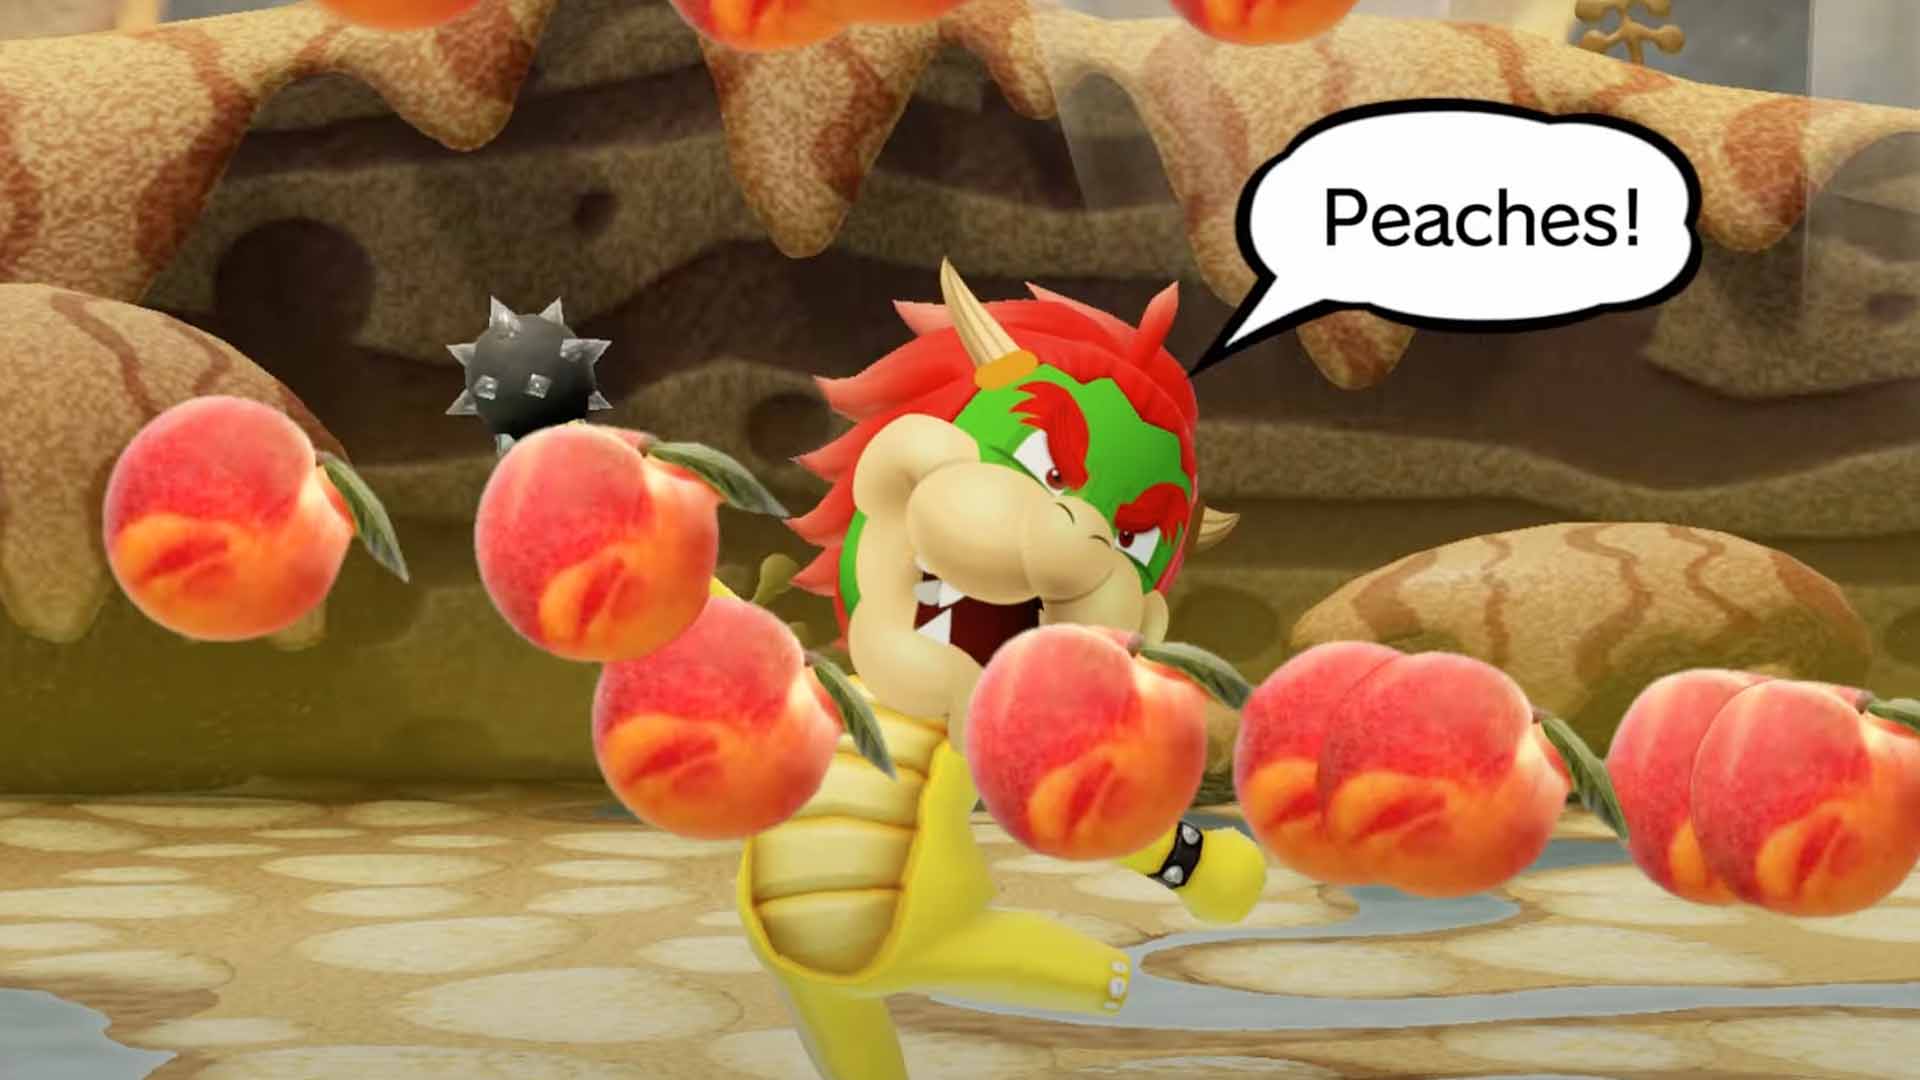 Peaches by Bowser (Super Mario Bros. Movie)